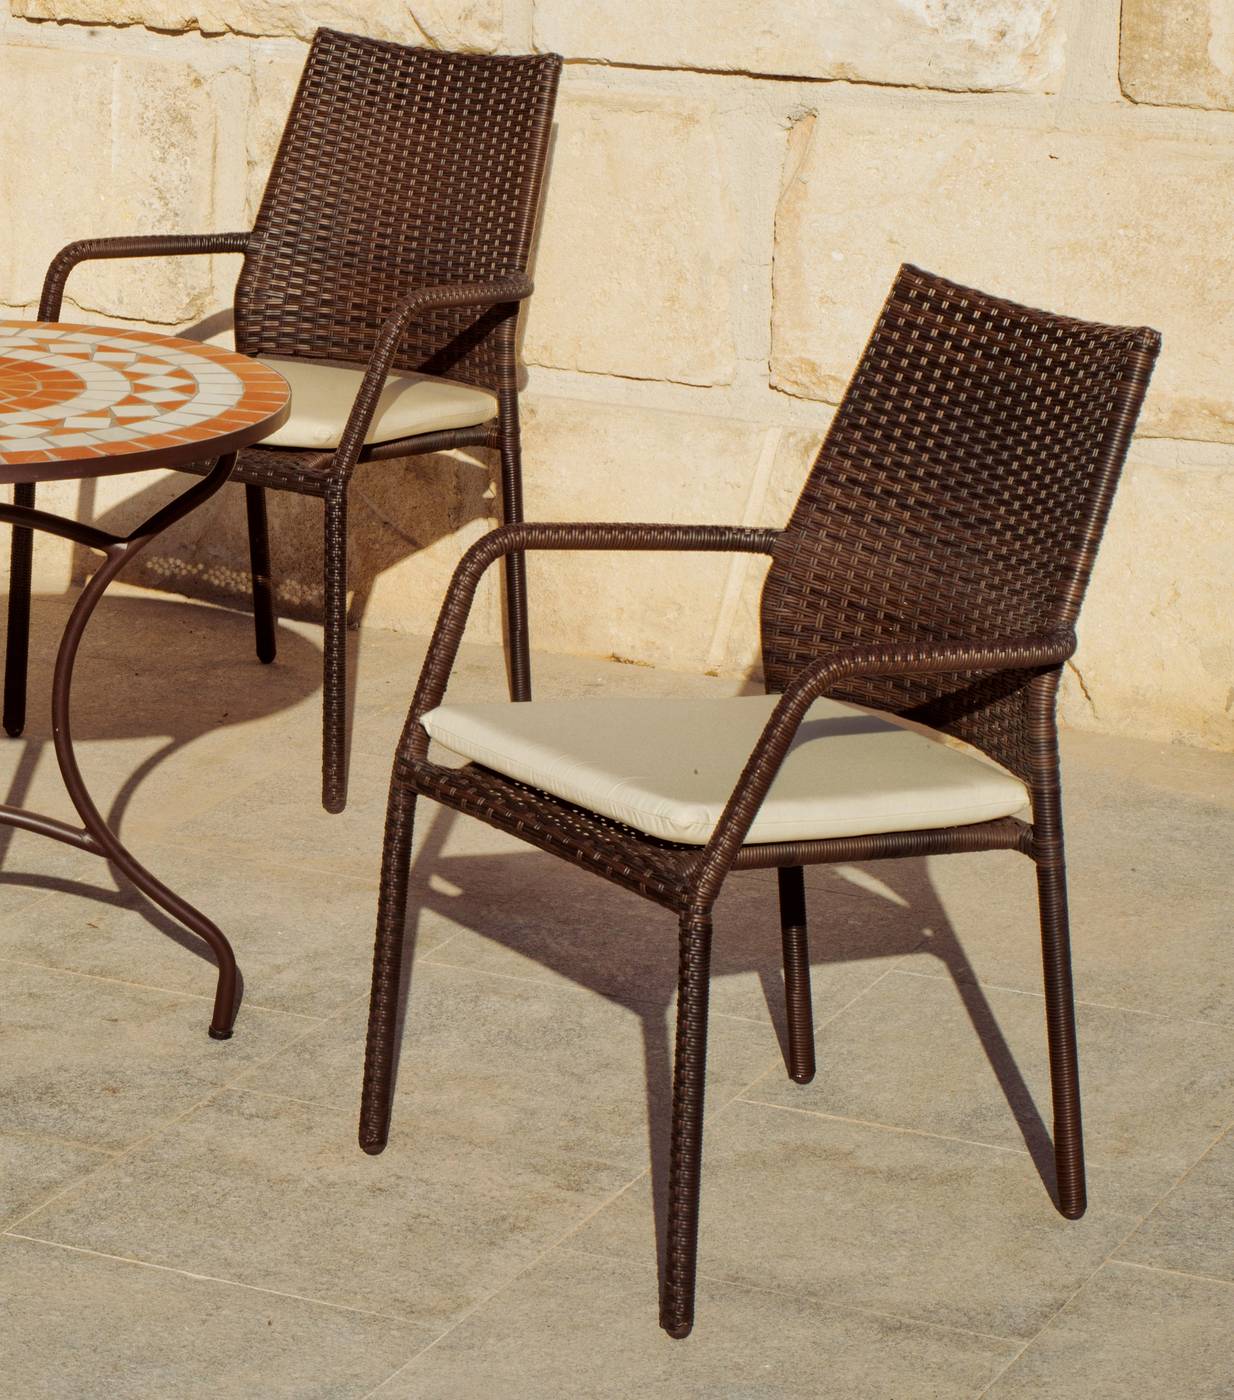 Set Mosaico Settel/Tarsos - Mesa cuadrada de acero forjado en color bronce y tablero mosaico + 4 sillones apilables de ratán sintético